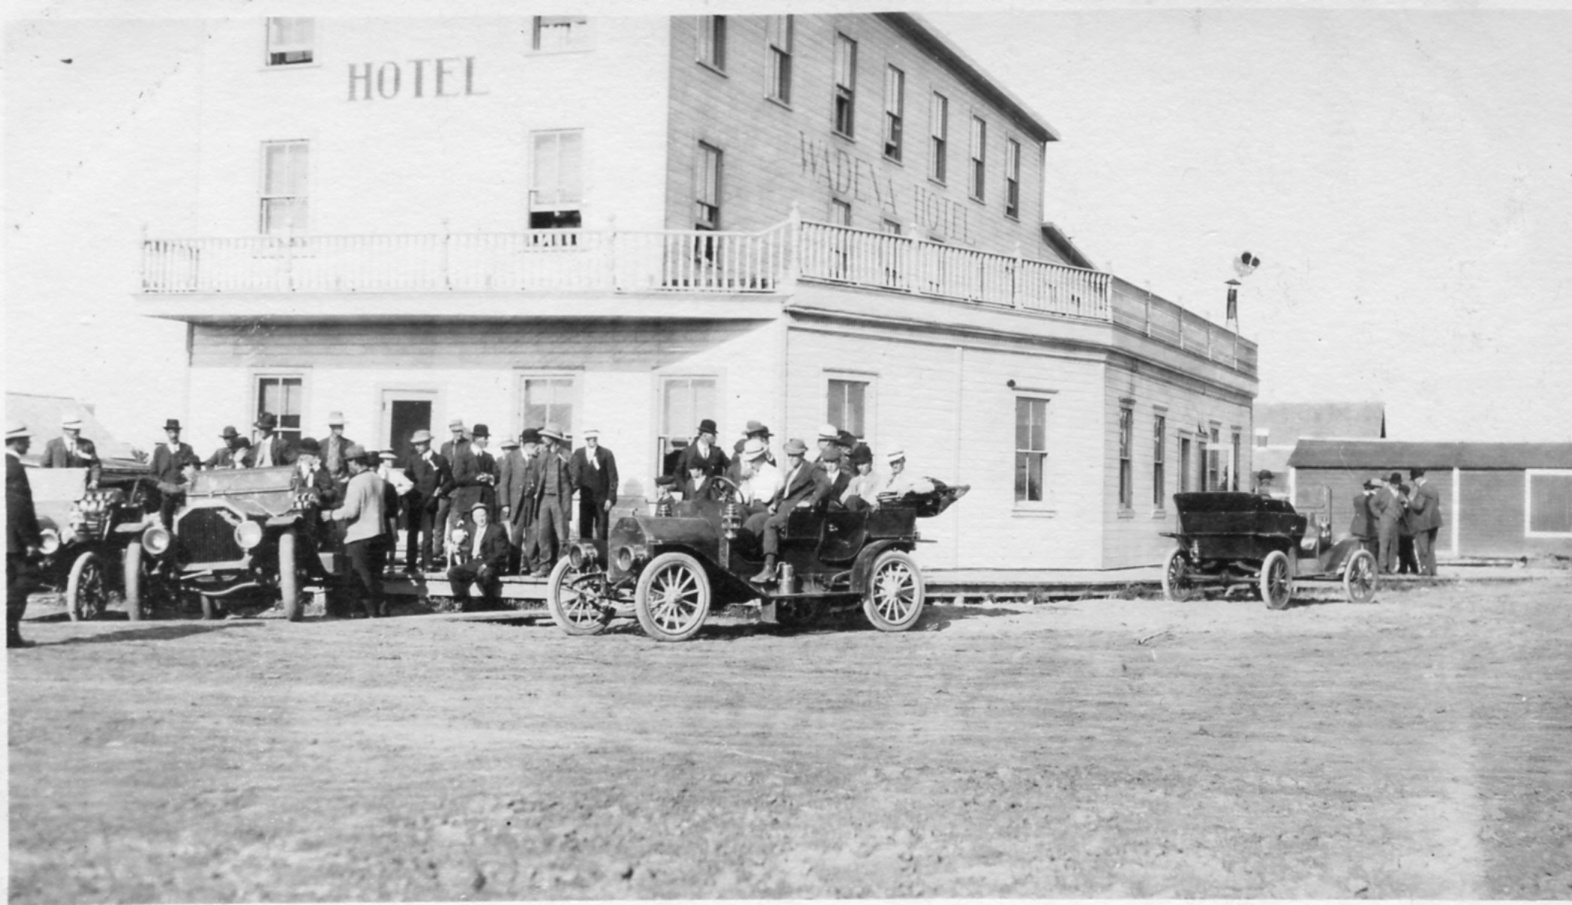 wadena hotel 1911 model ts